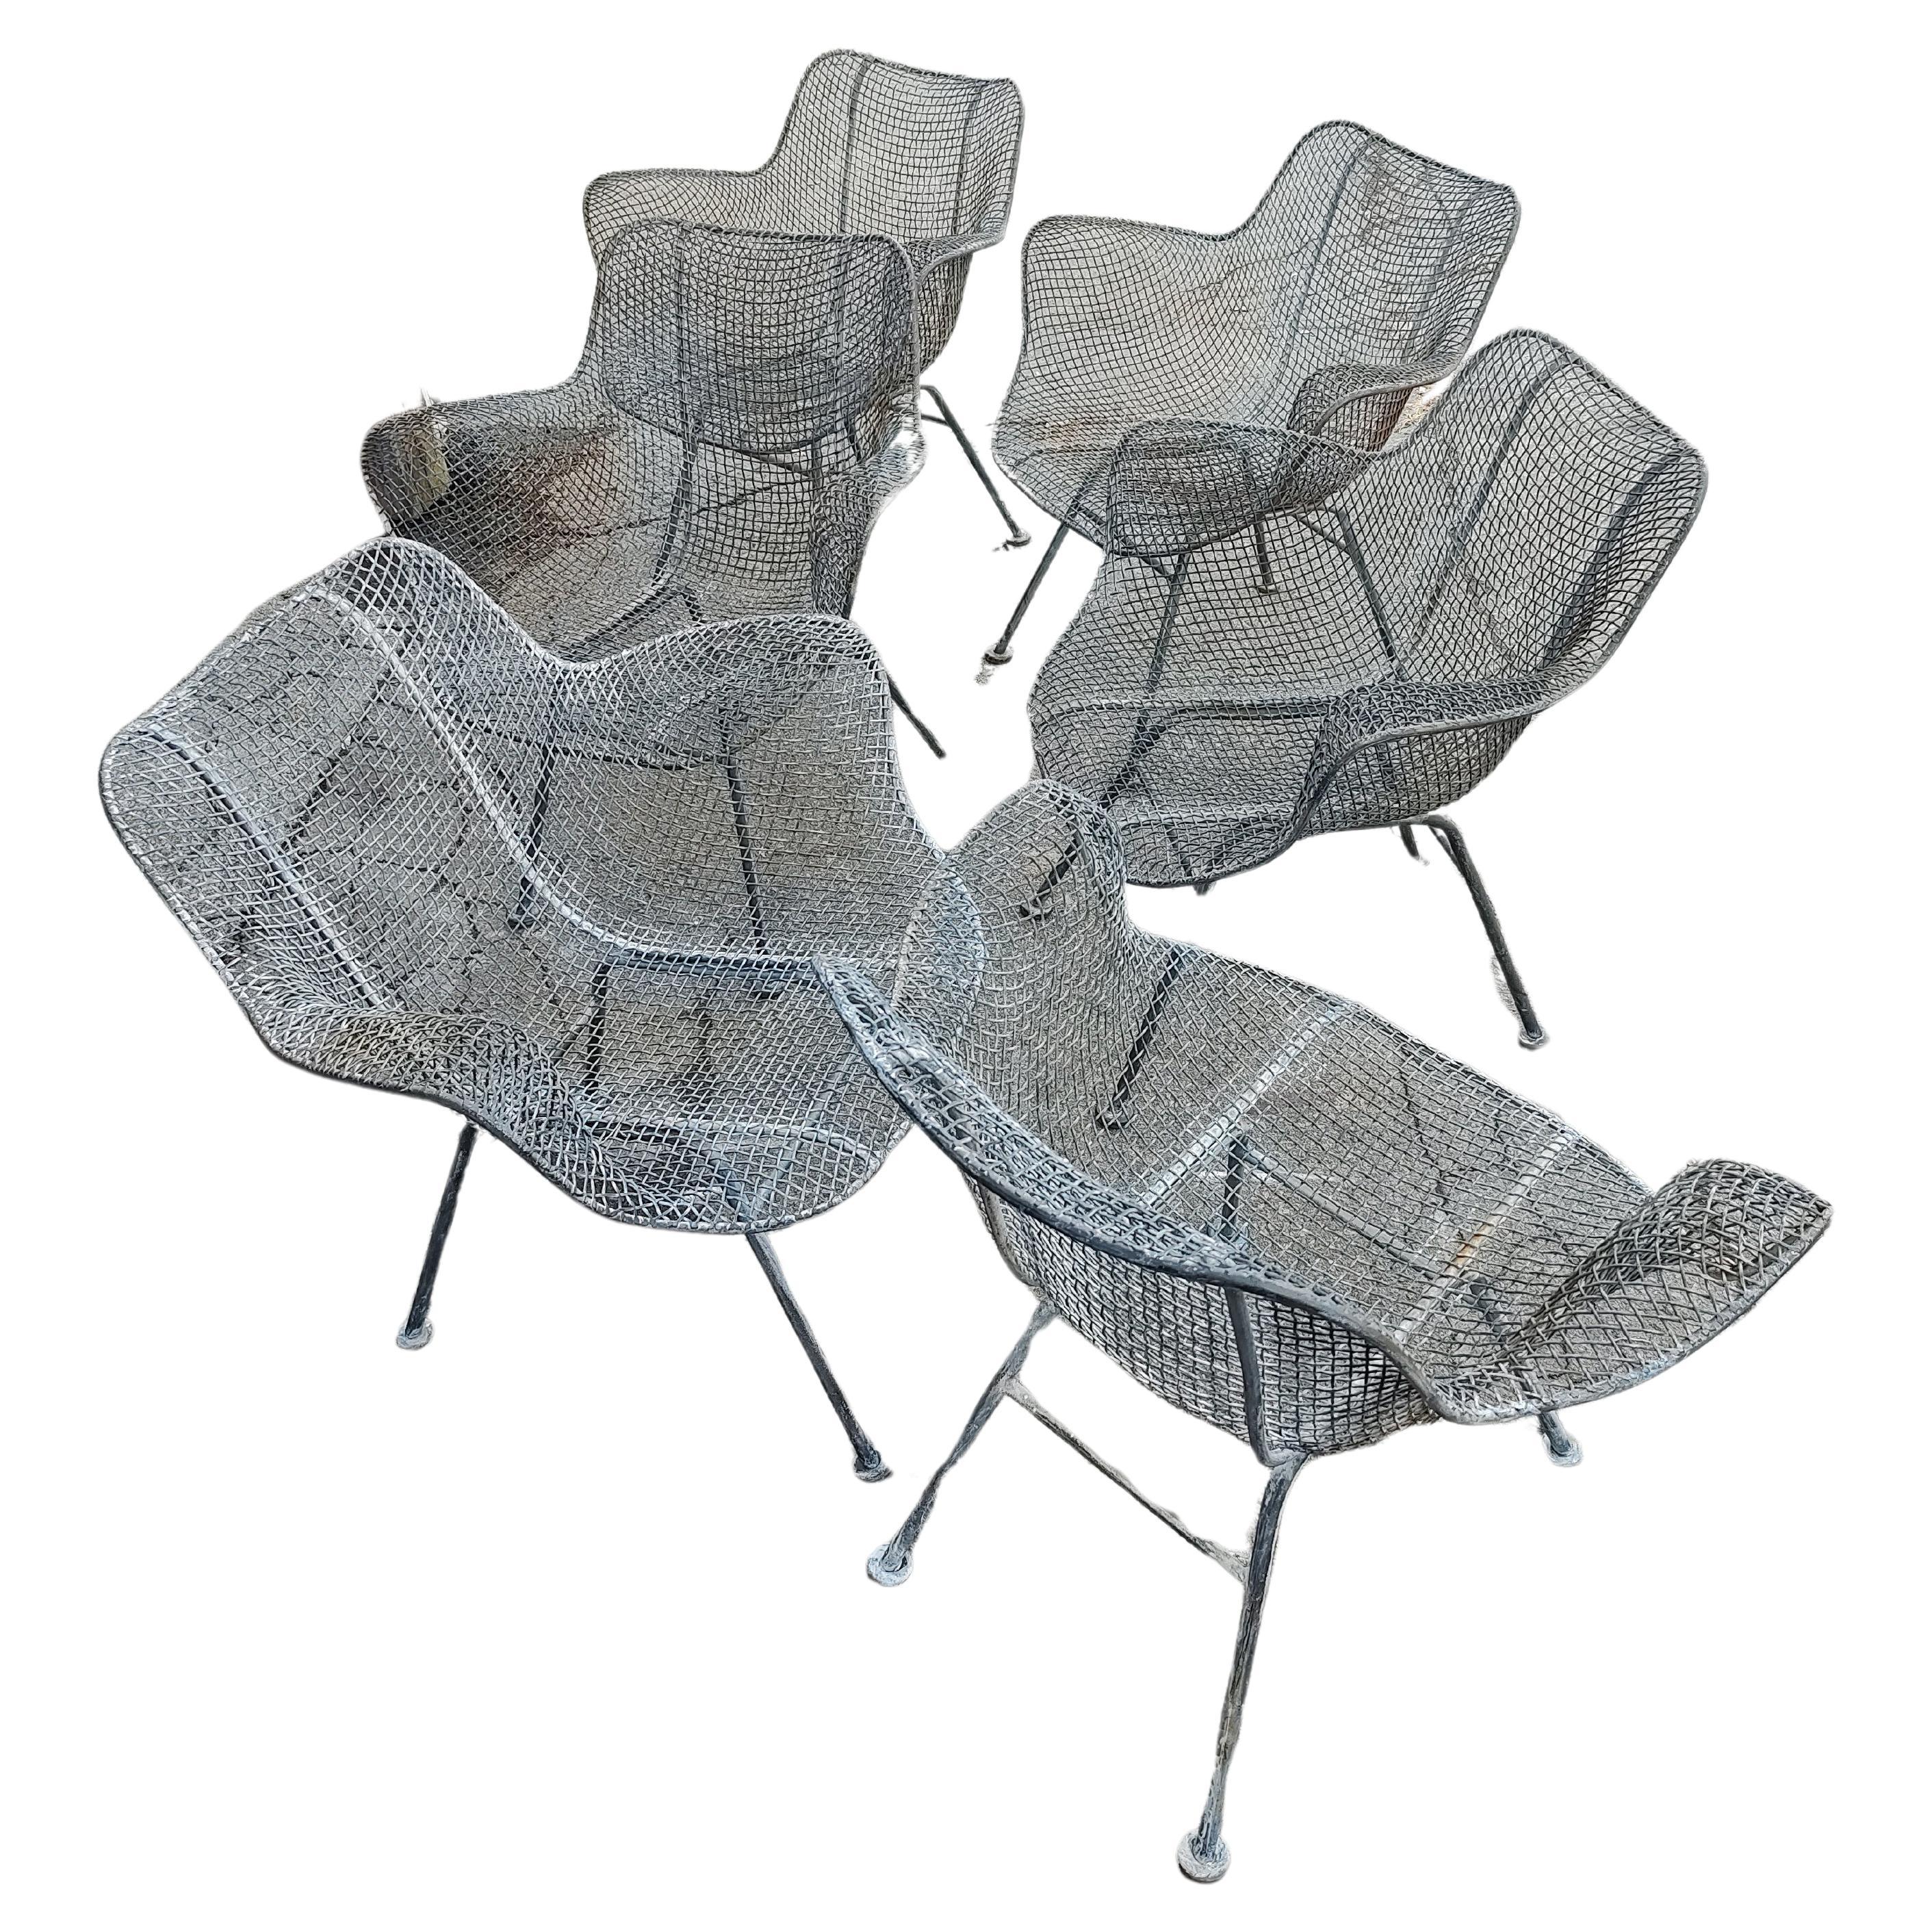 Fabelhafter Satz von sechs Sculptura-Sesseln von Russell Woodard aus dem Jahr 1955, die von jeglicher Farbe befreit wurden und nun in blankem Metall auf eine neue Lackierung warten. In ausgezeichnetem Vintage-Zustand mit etwas Oberflächenpatina oder